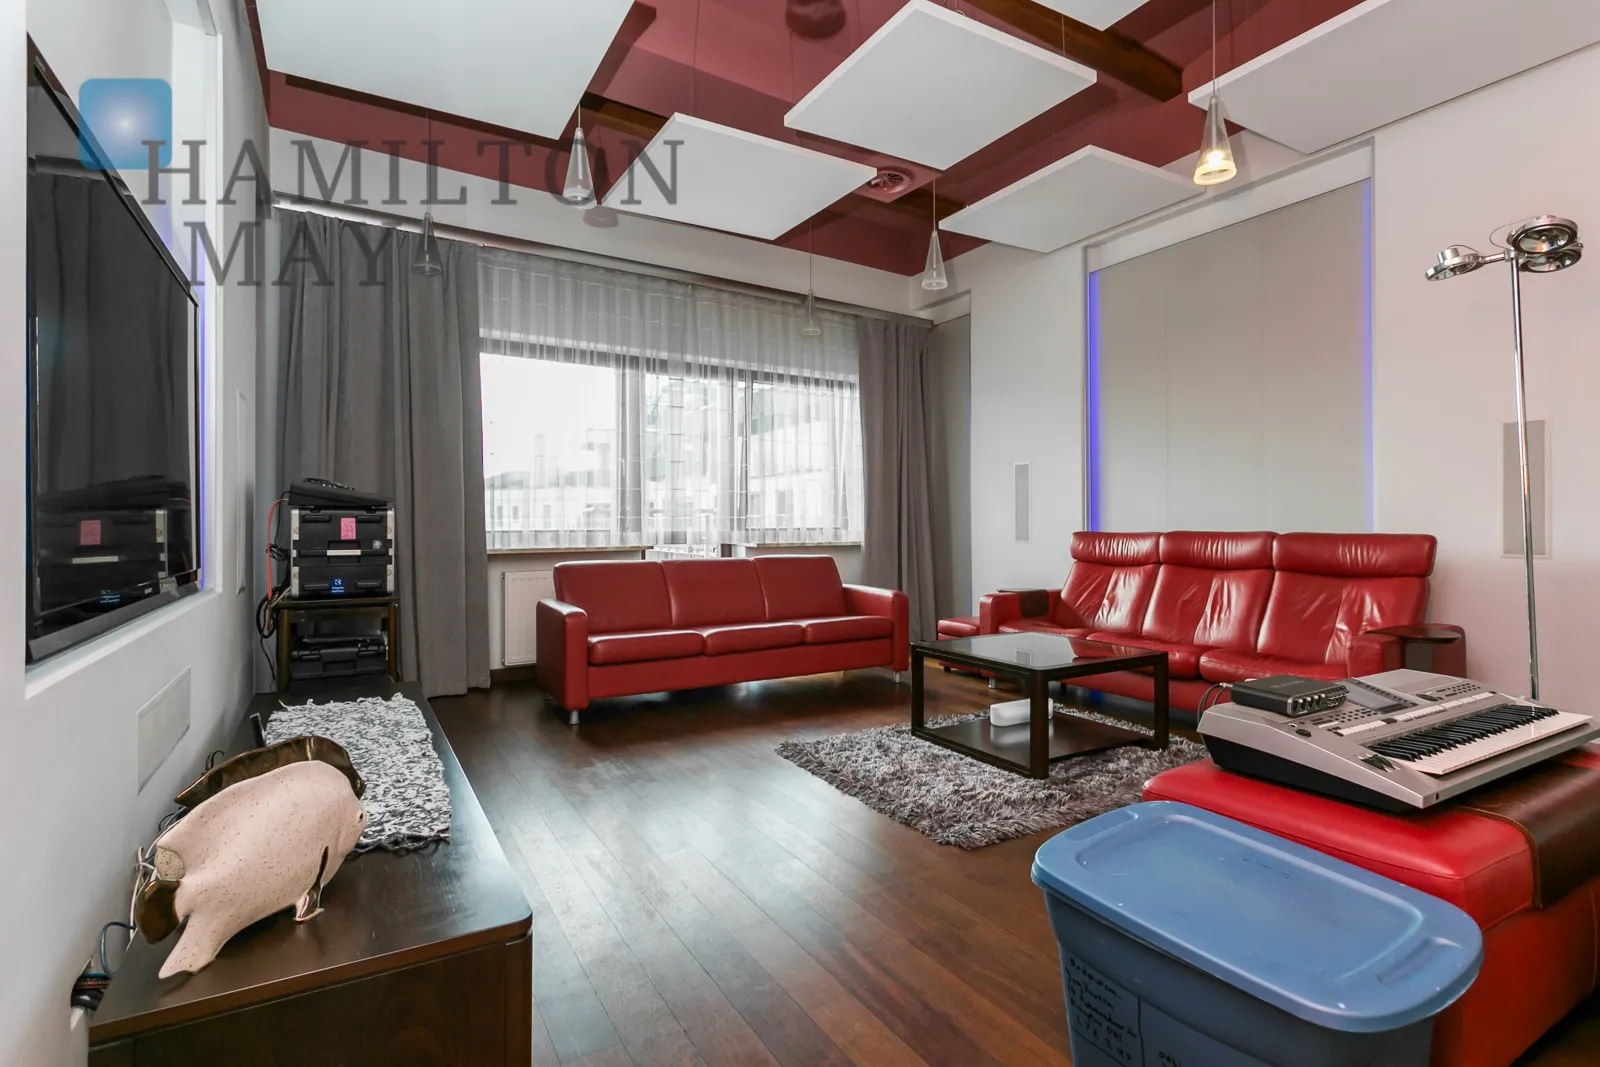 Piękny, widokowy apartament z dwiema sypialniami dostępny na wynajem w prestiżowej inwestycji Ludwinów